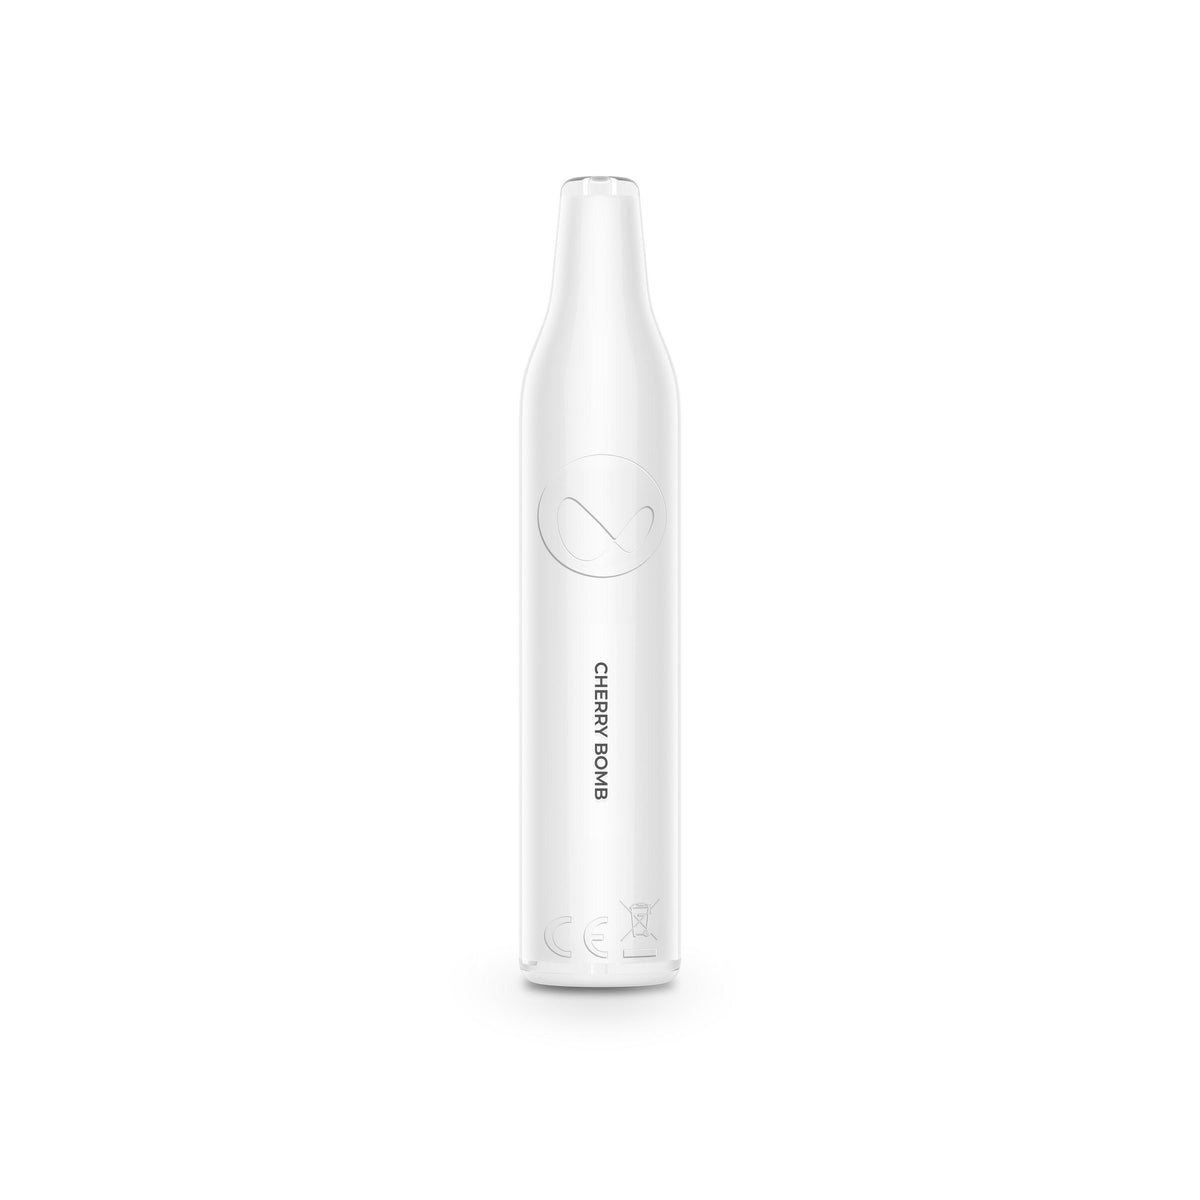 Waka Mini Disposable - Cherry Bomb (18mg/ml) - RELX Switzerland